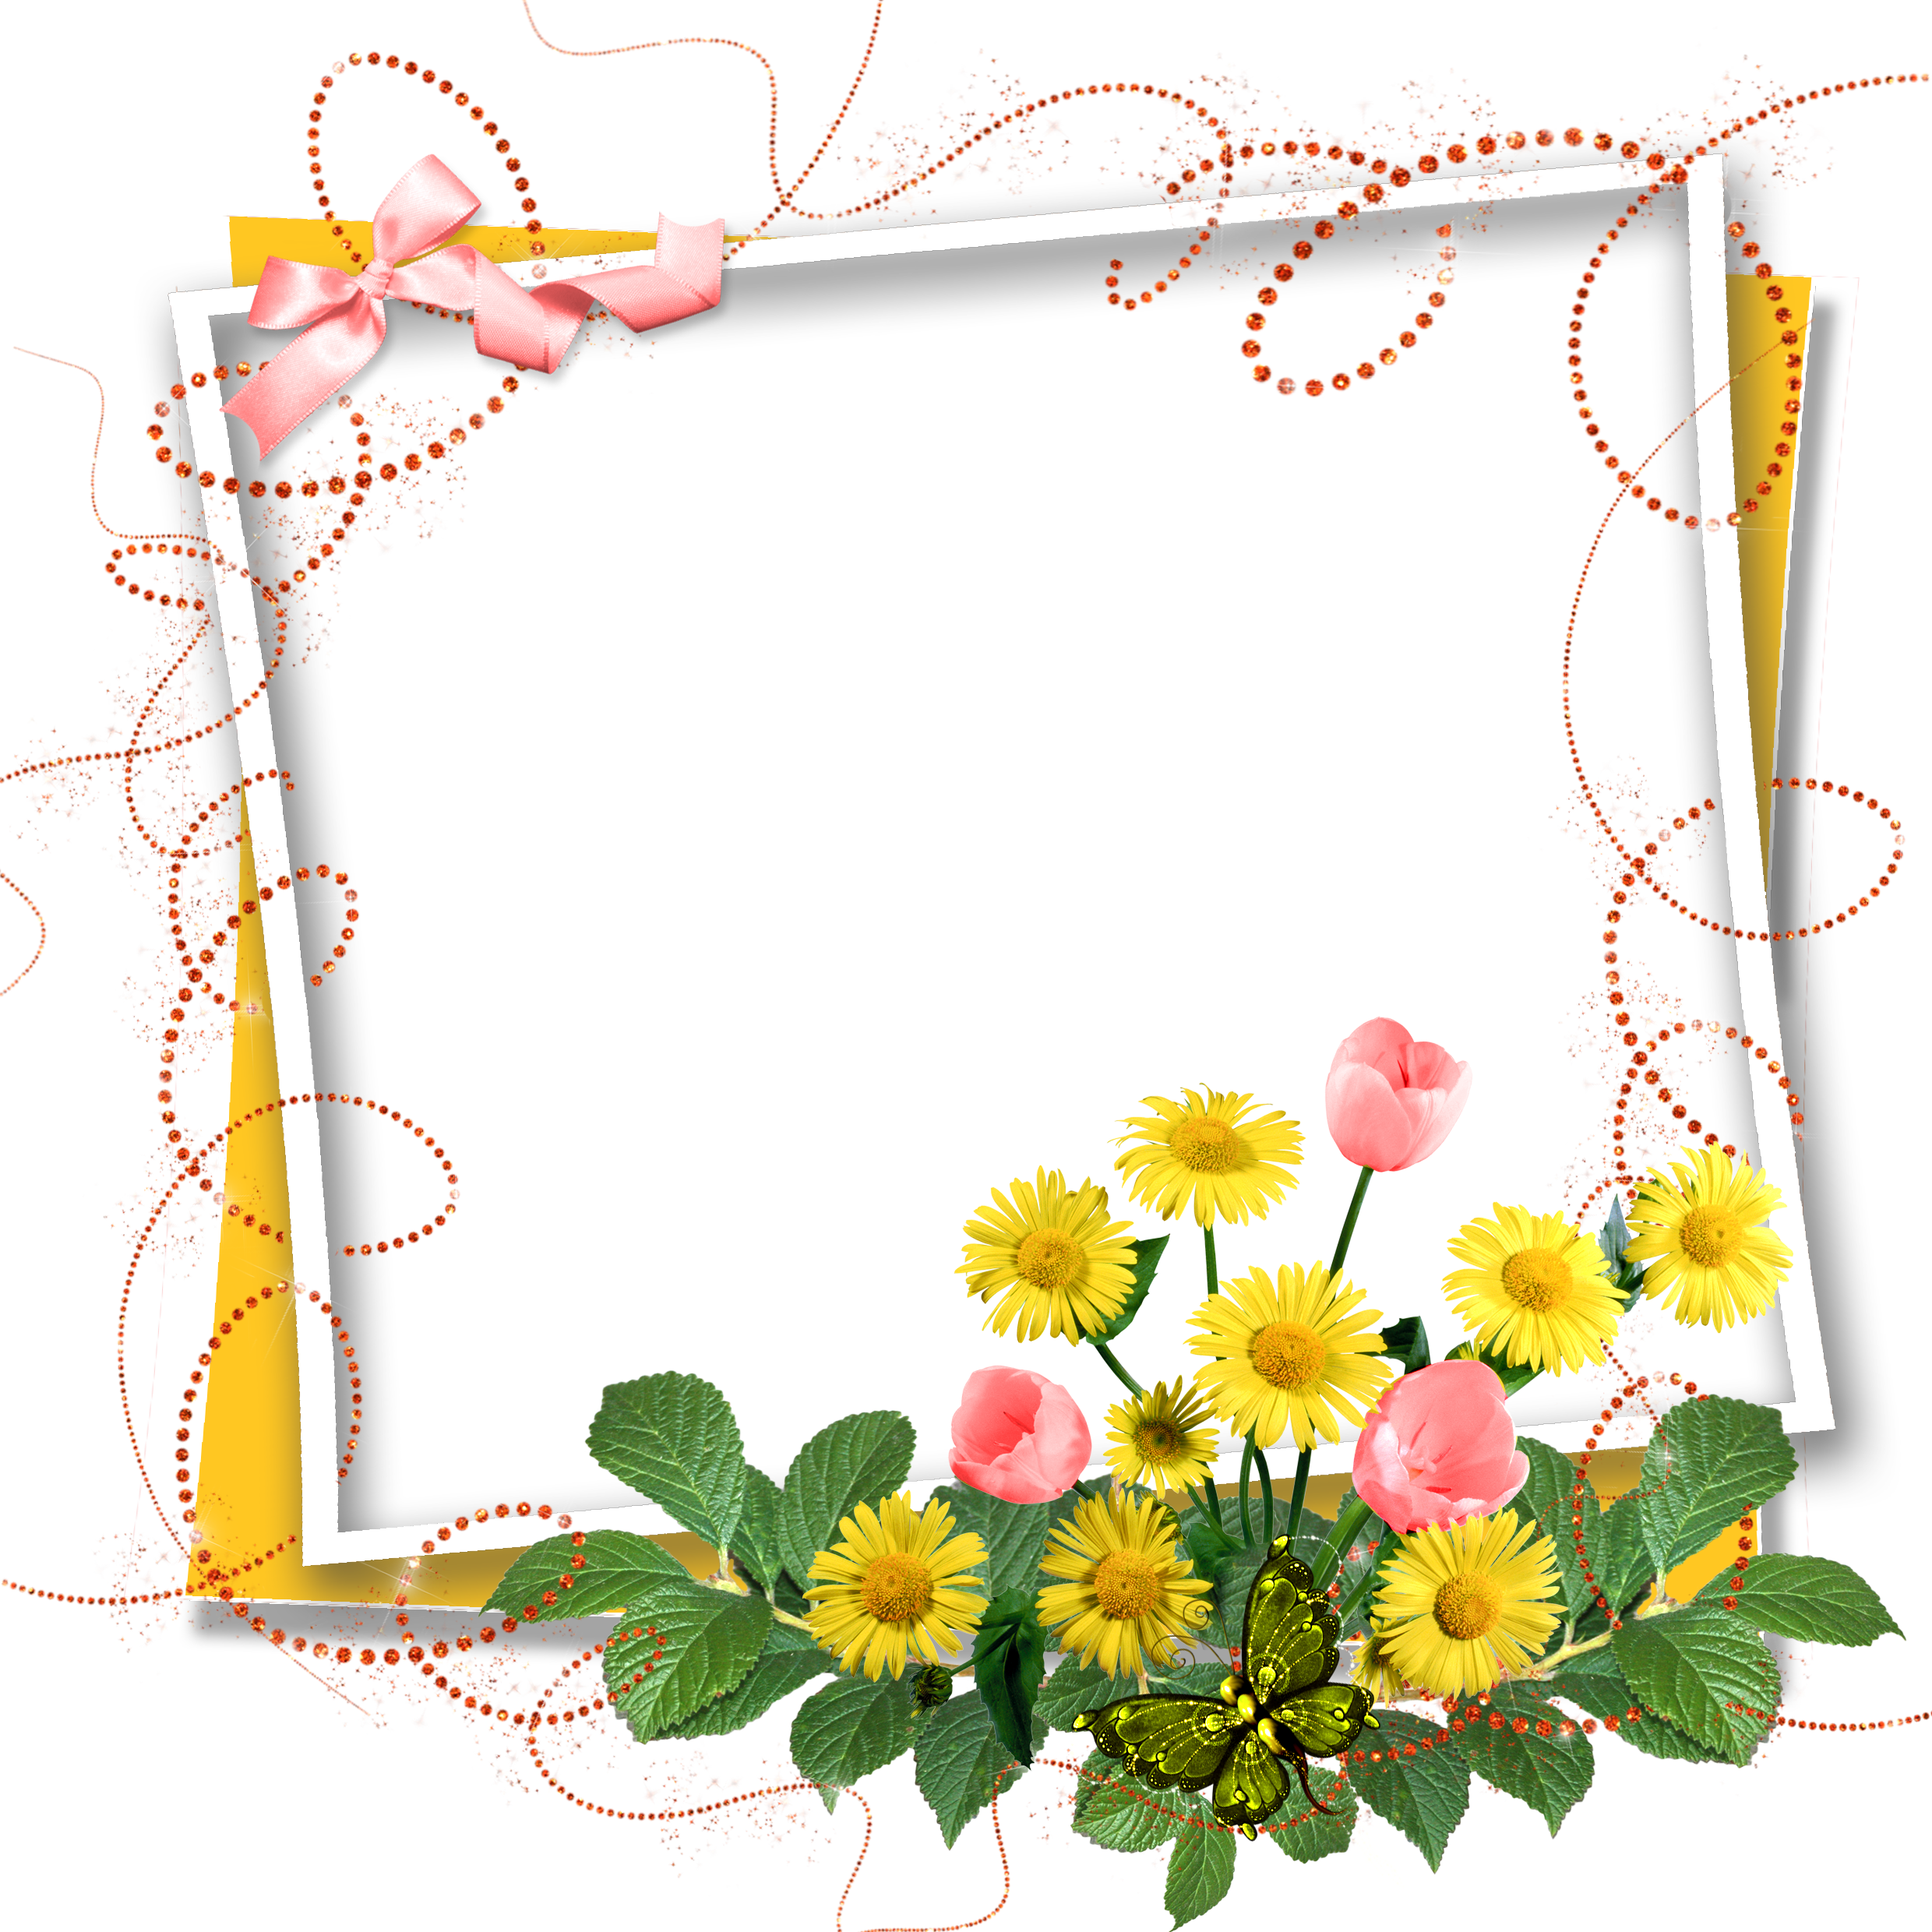 دانلود کادر گلدار بسیار خوشگل برای چاپ کارت پستال 